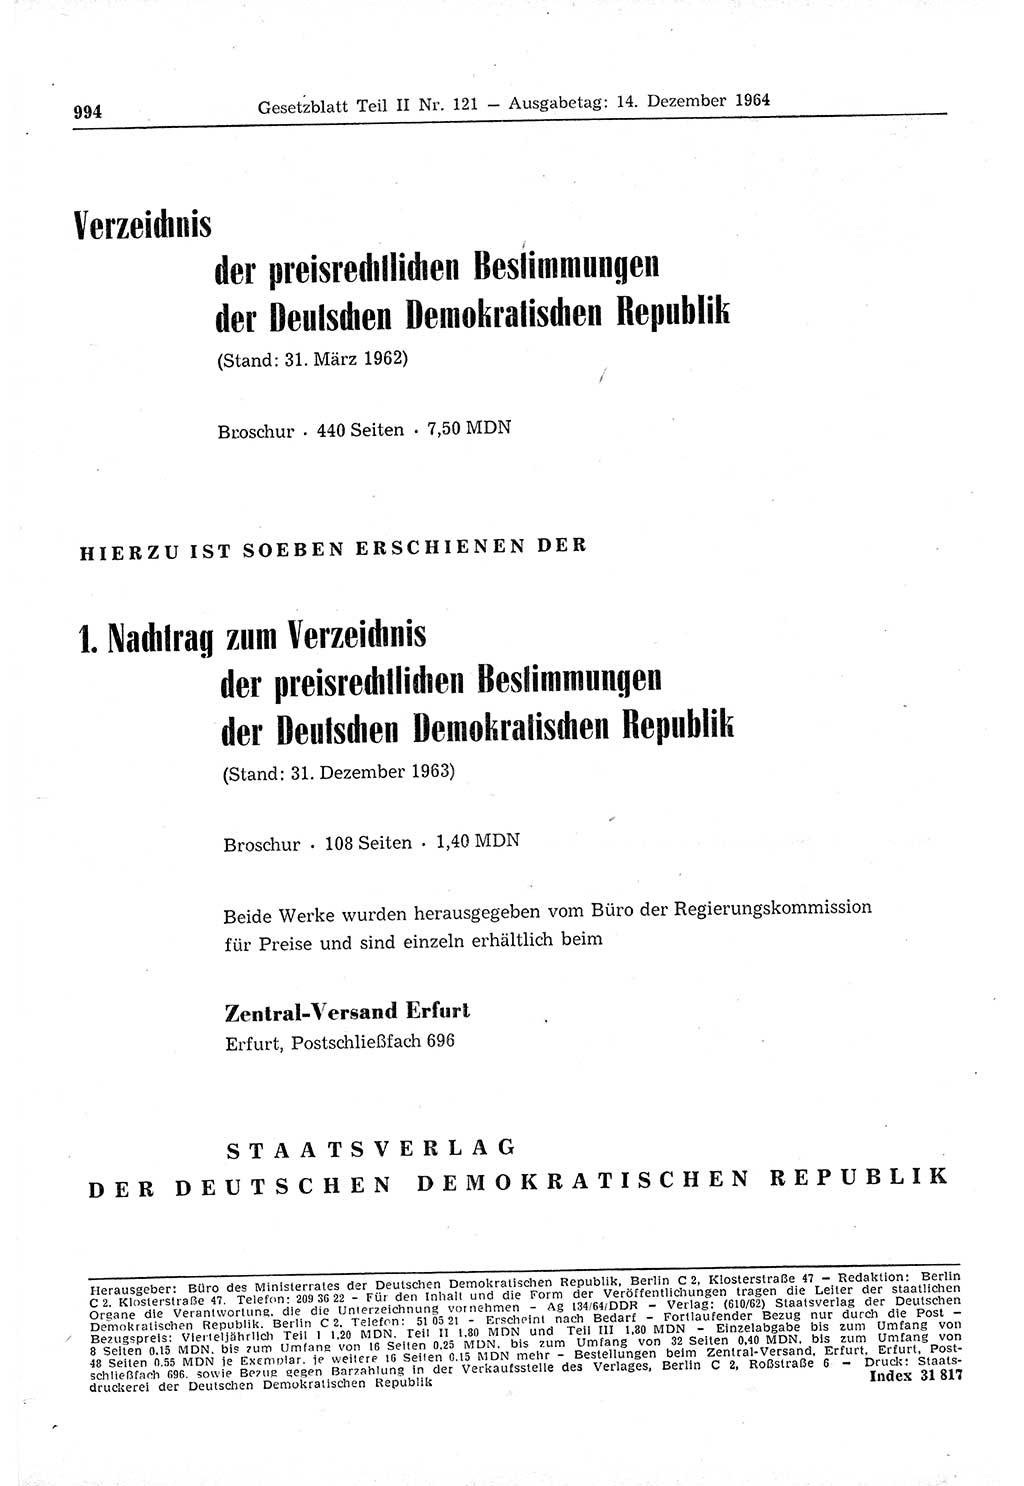 Gesetzblatt (GBl.) der Deutschen Demokratischen Republik (DDR) Teil ⅠⅠ 1964, Seite 994 (GBl. DDR ⅠⅠ 1964, S. 994)